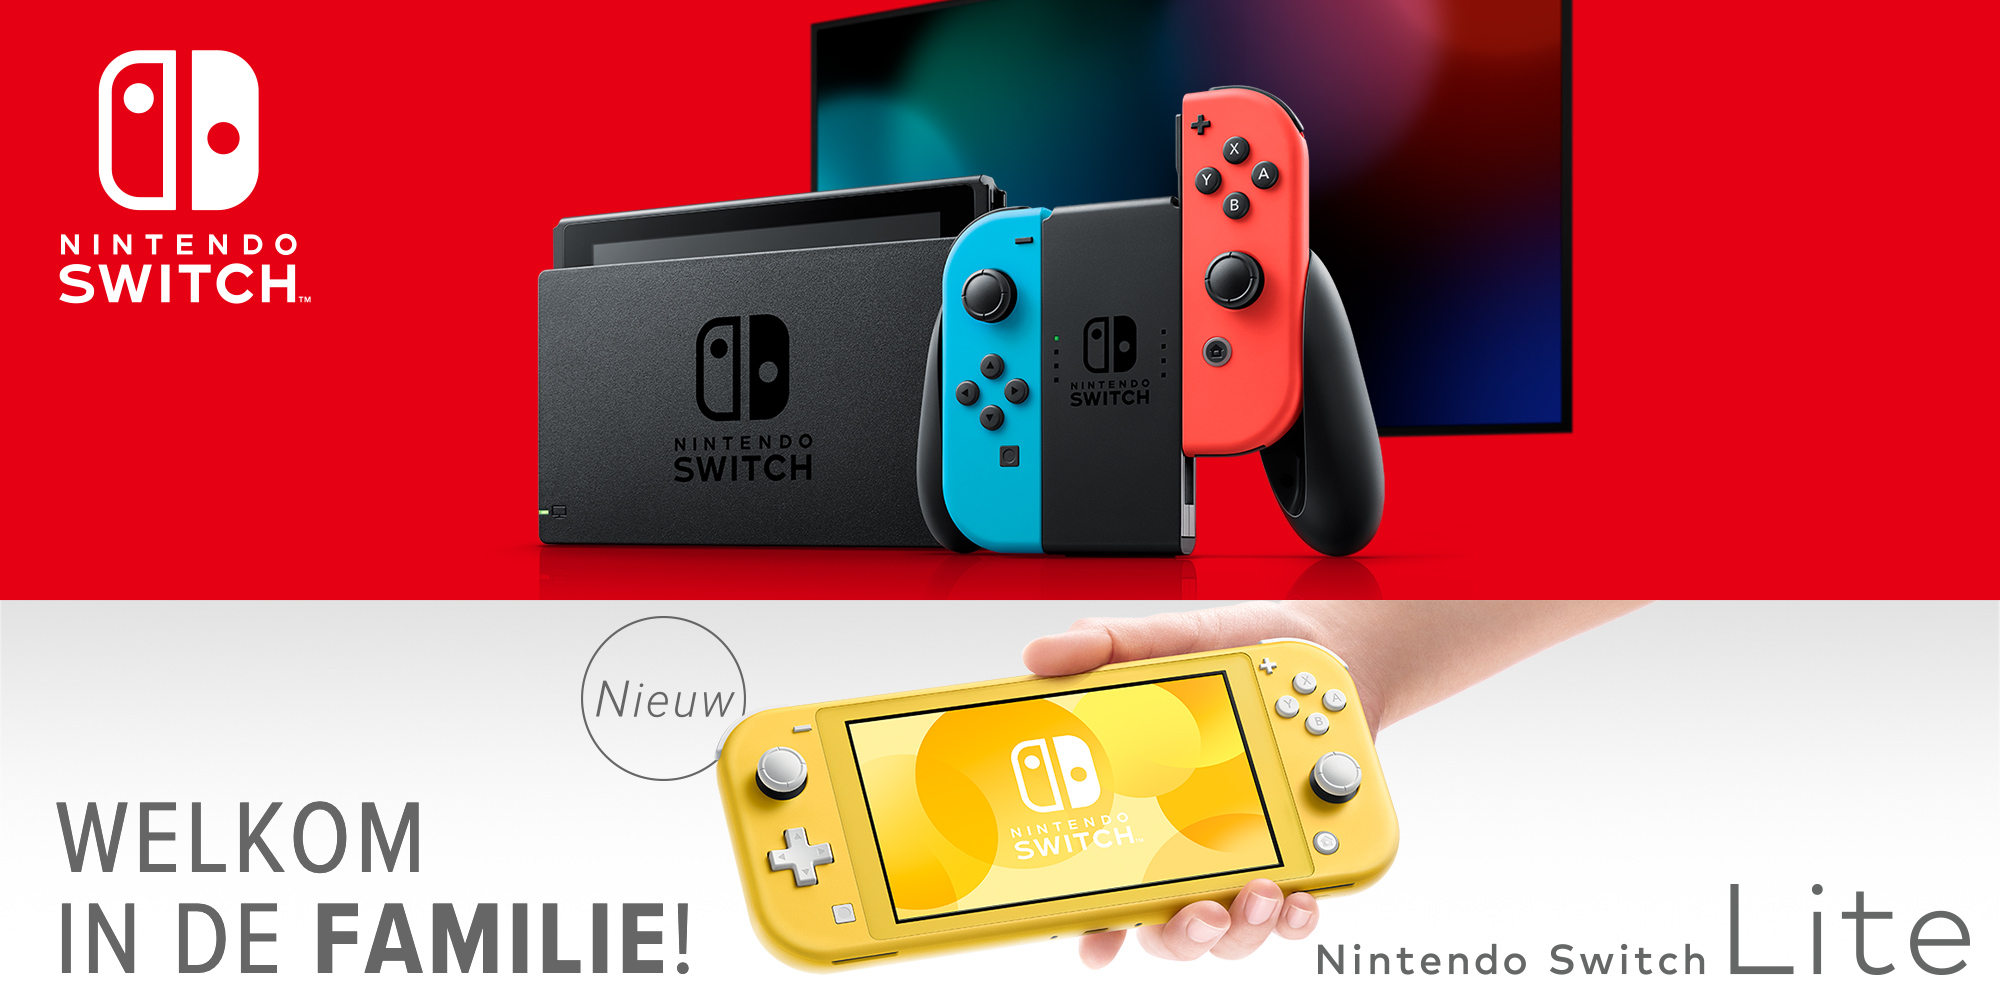 Maak je klaar voor de Nintendo Switch Lite!